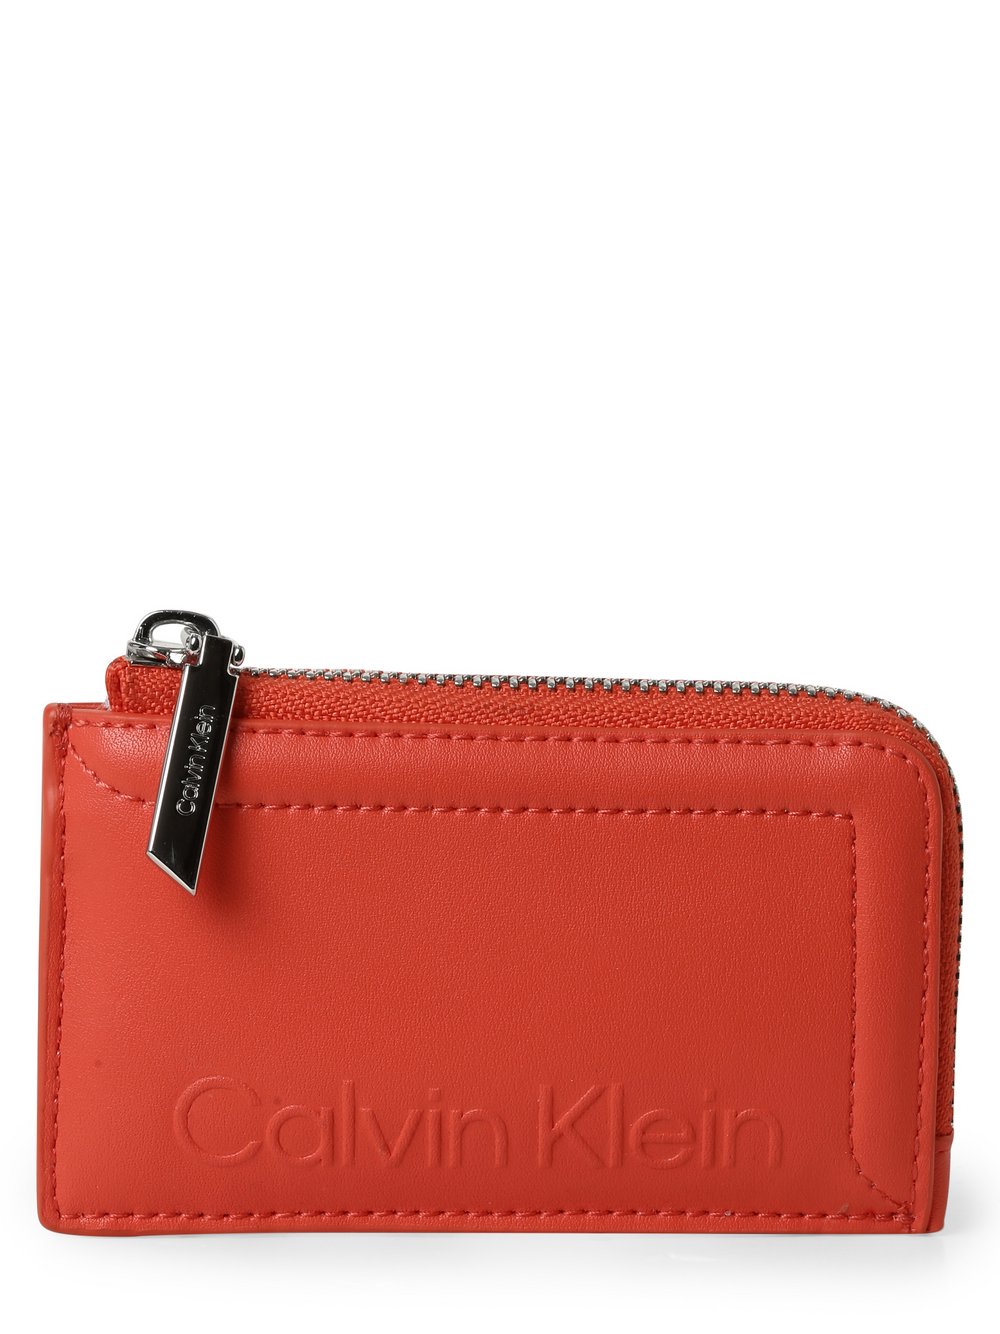 Calvin Klein - Portfel damski, pomarańczowy|czerwony